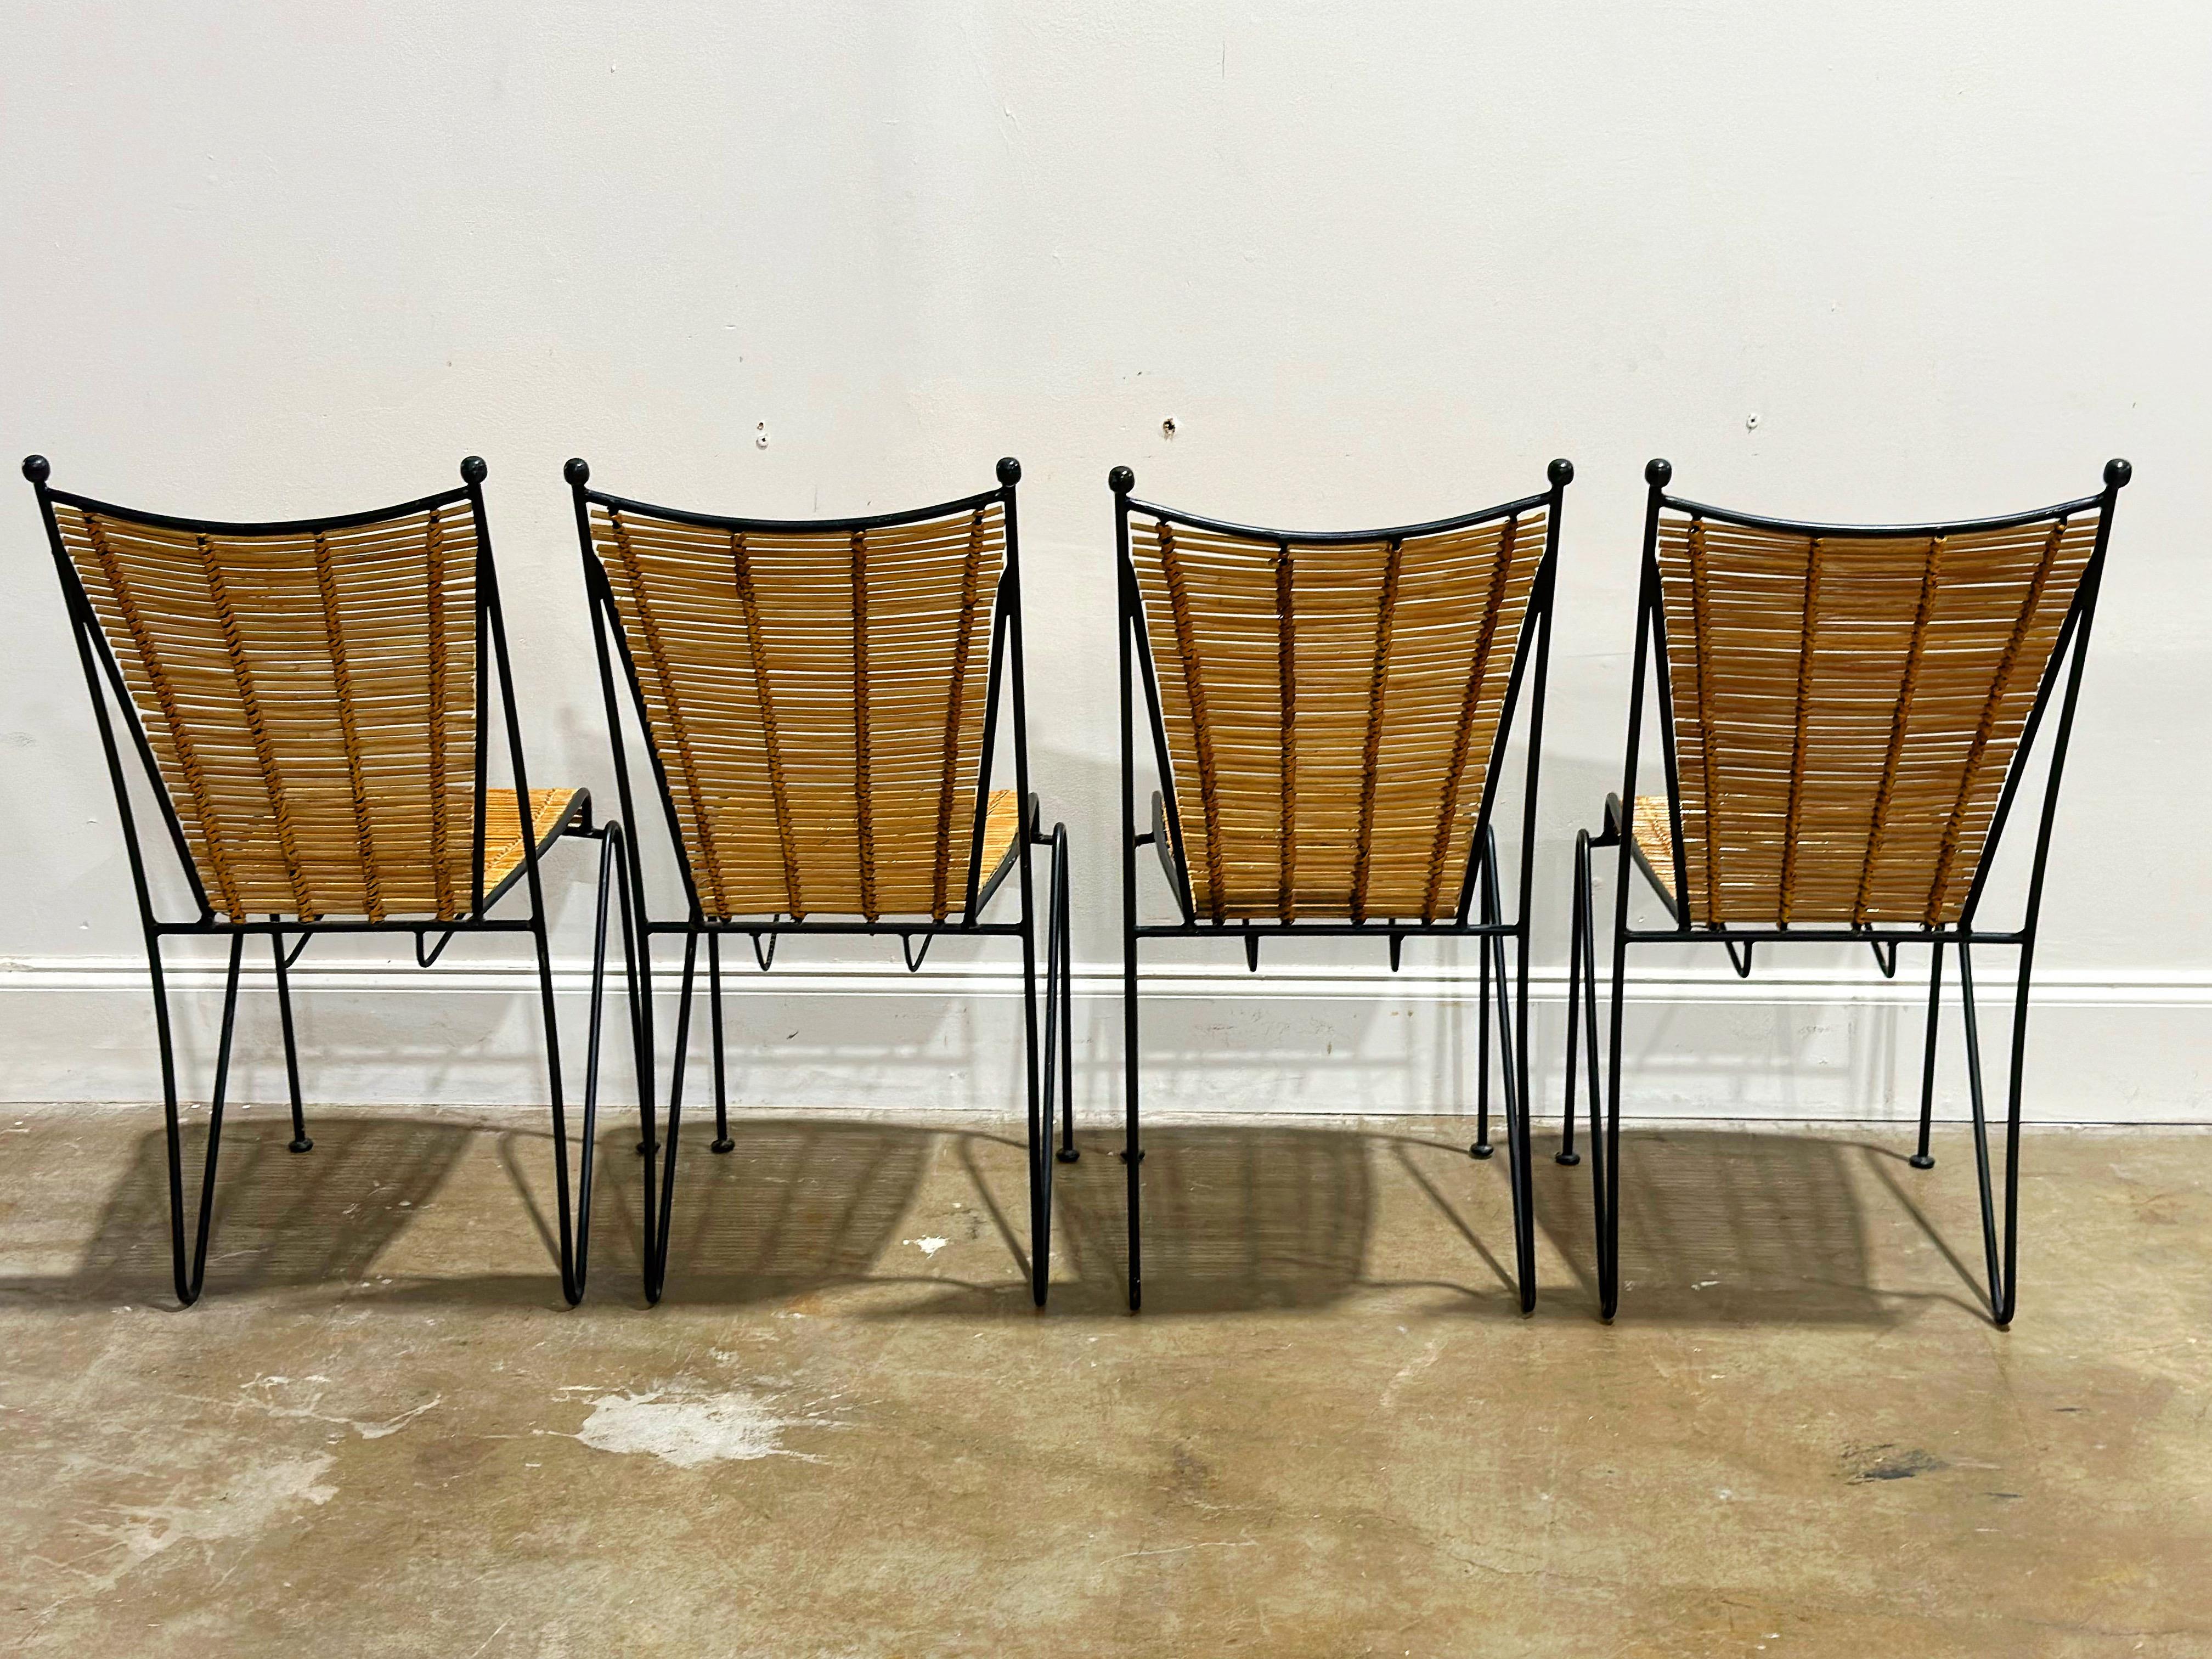 Mid-20th Century Pipsan Saarinen Swanson Chairs, Wrought Iron + Rattan, Organic Modern Set of 4